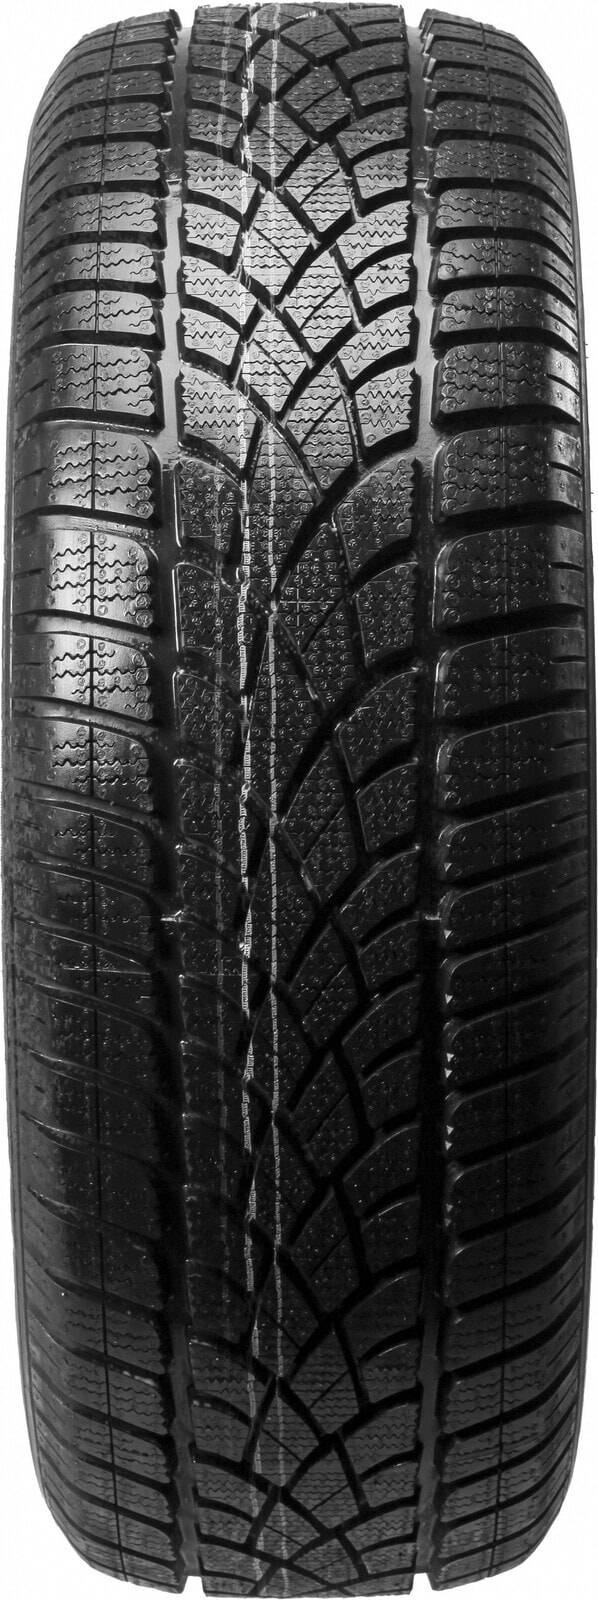 Шины для внедорожника зимние Dunlop SP Winter Sport 3D AO 3PMSF M+S DOT22 255/45 R20 101V